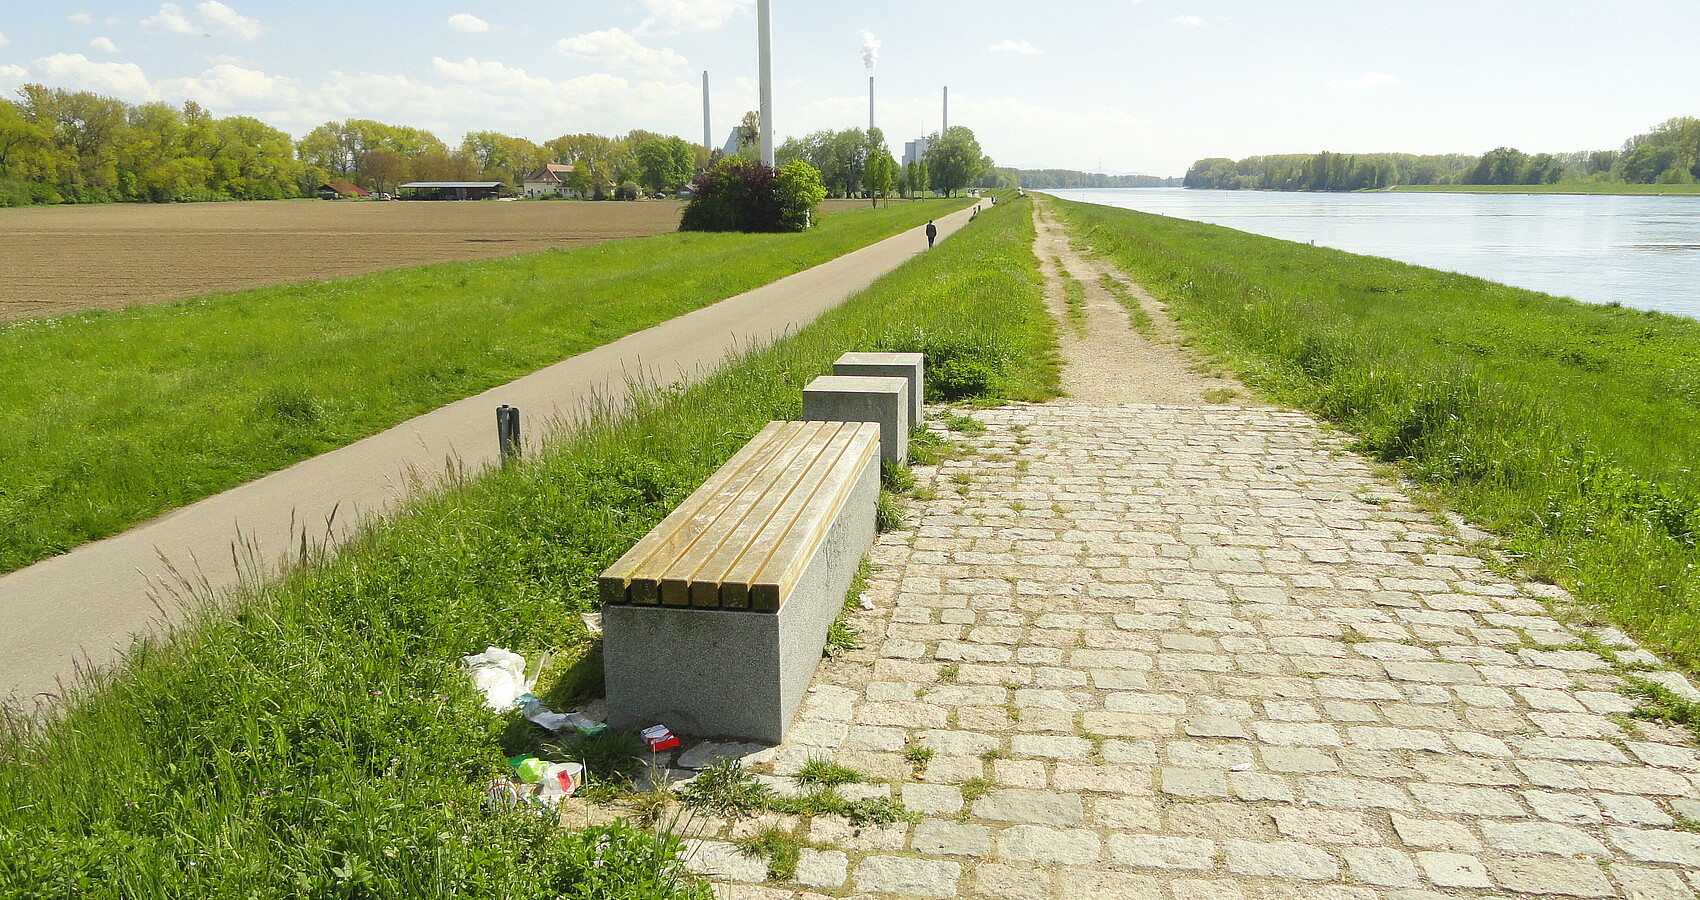 Auf dem Bild sieht man rechts den Rhein und links Wiesen und das Hofgut Maxau. Entlang des Rheins sieht man den unbefestigten Weg auf dem Rheindamm (rechts) sowie den befestigten Rad- und Fußweg am Dammfuß (links), mit Fußgänger. In Hintergrund befindet sich das Rheinhafen-Dampfkraftwerk, im Vordergrund einige Sitzgelegenheiten. Mittig, allerdings oben angeschnitten, befindet sich ein Windrad. 